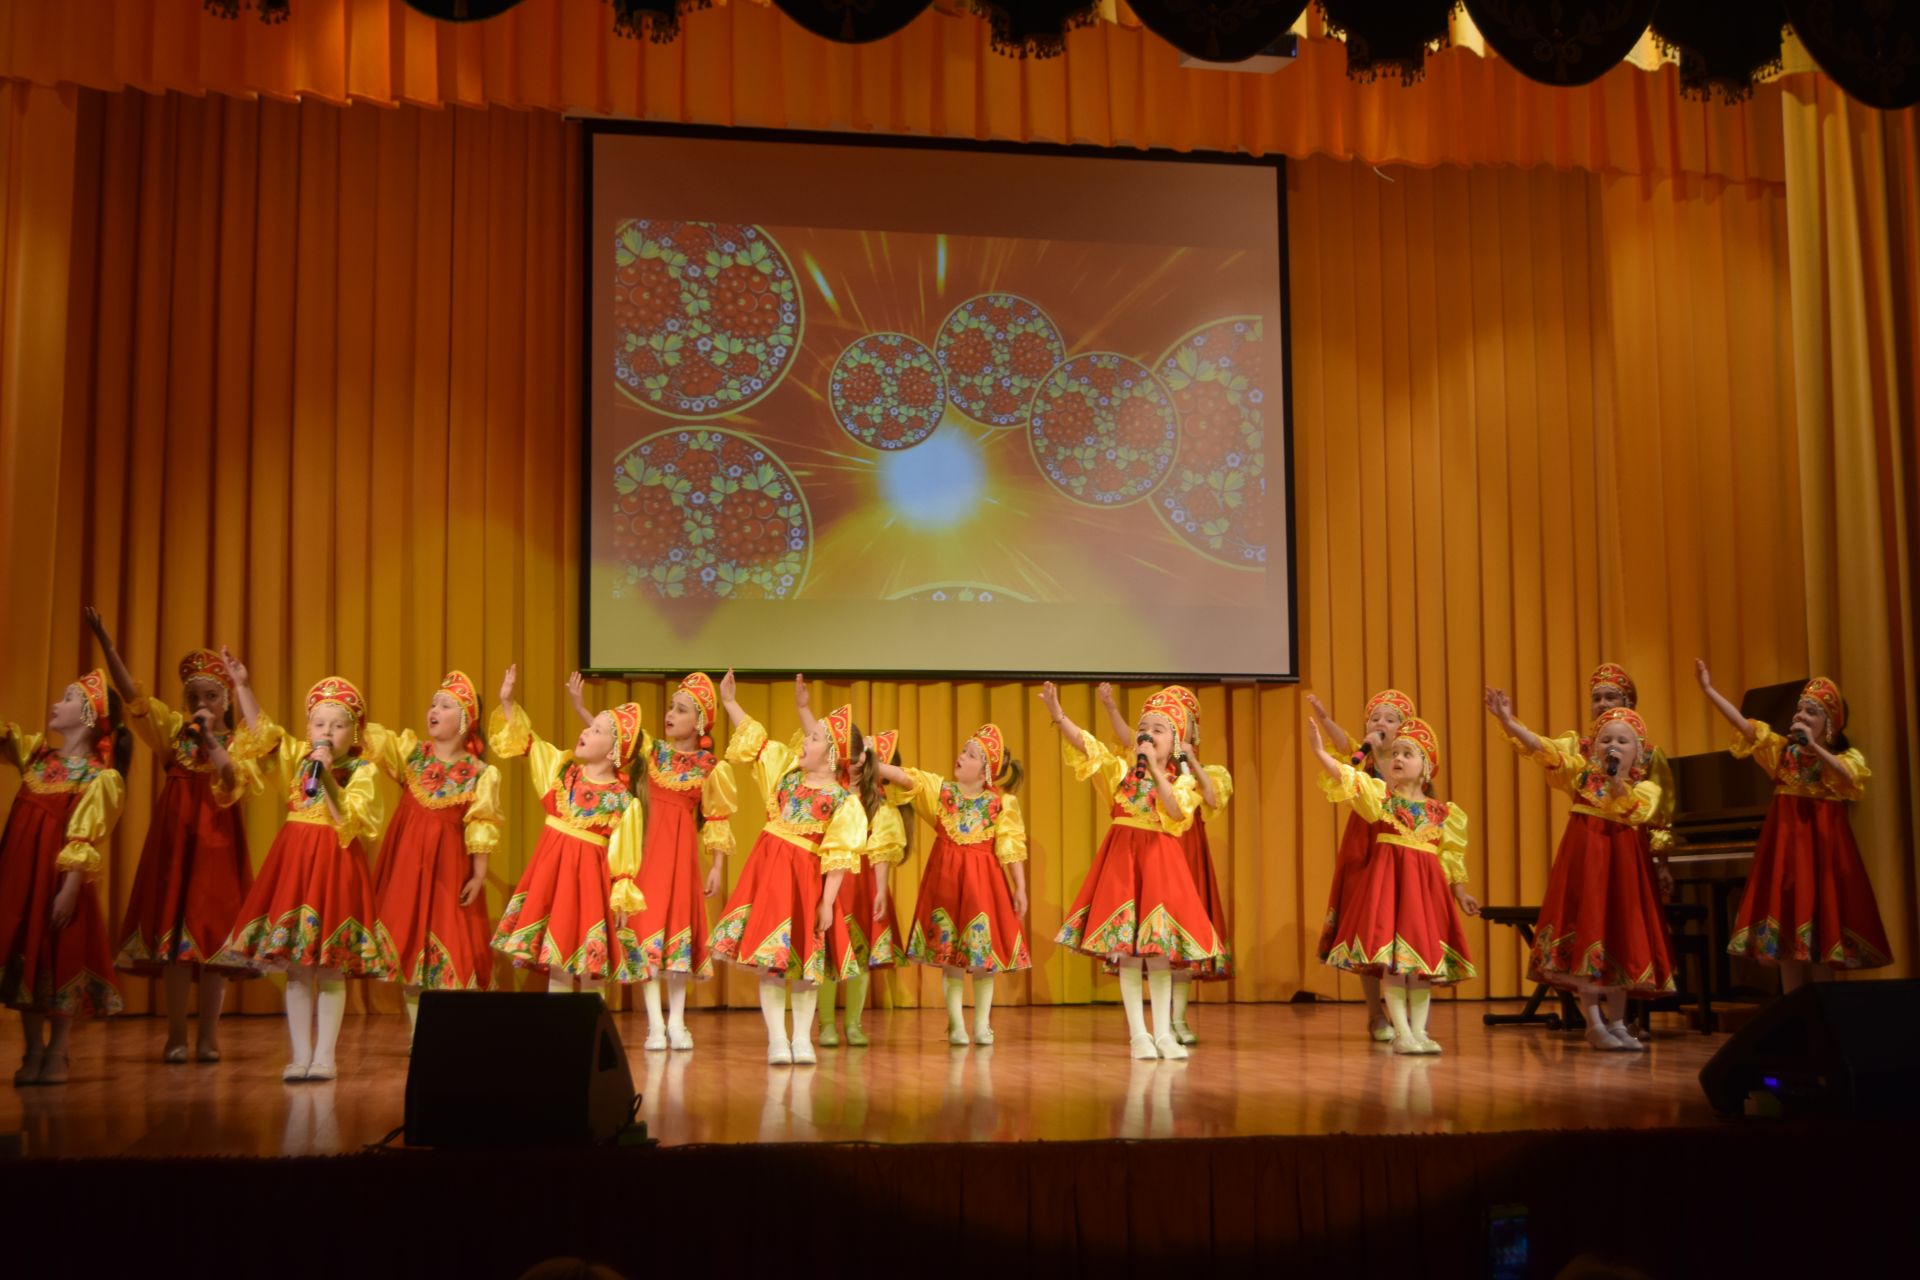 24 апреля в Районном Доме Культуры состоялся отчётный концерт Детской школы искусств.